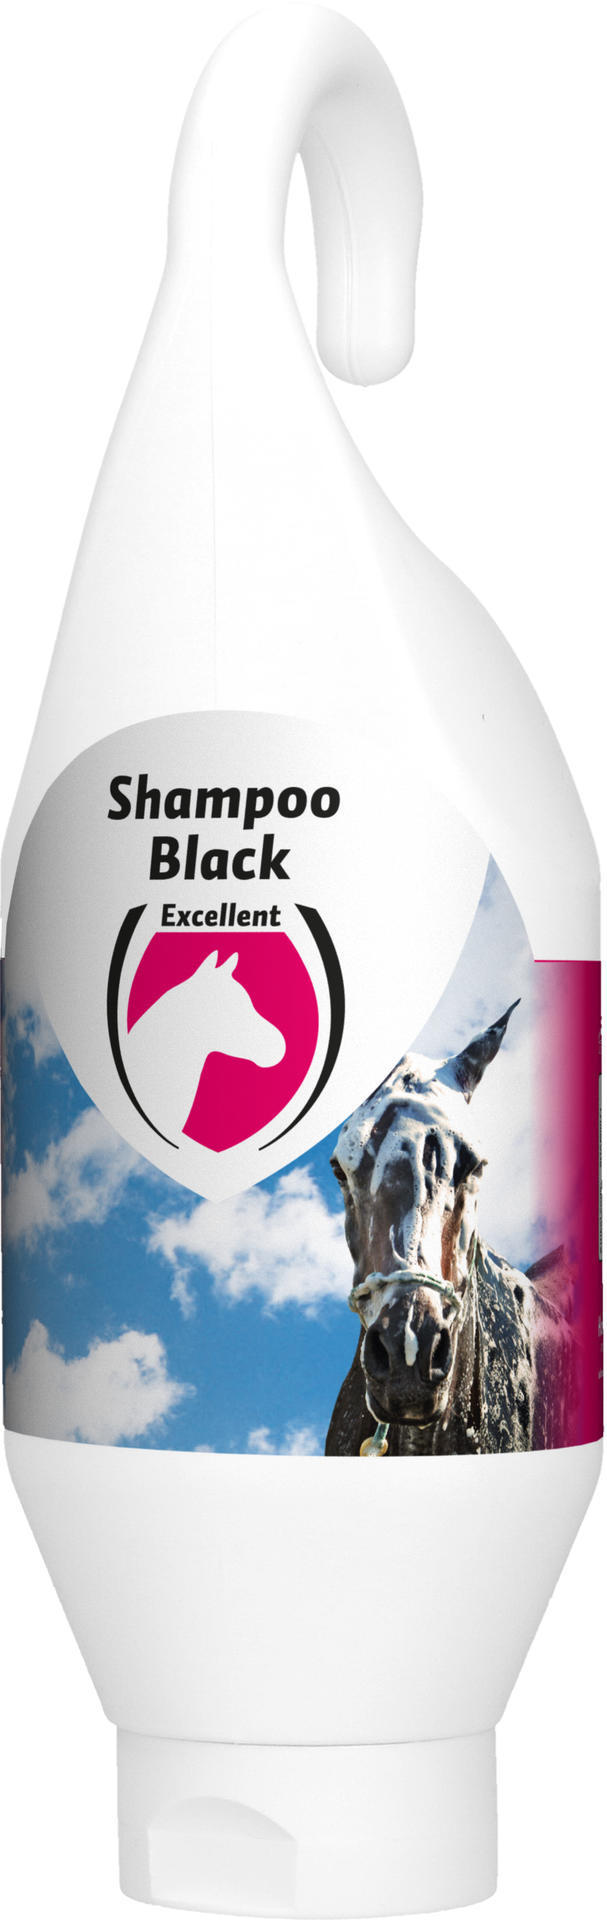 Horse shampoo